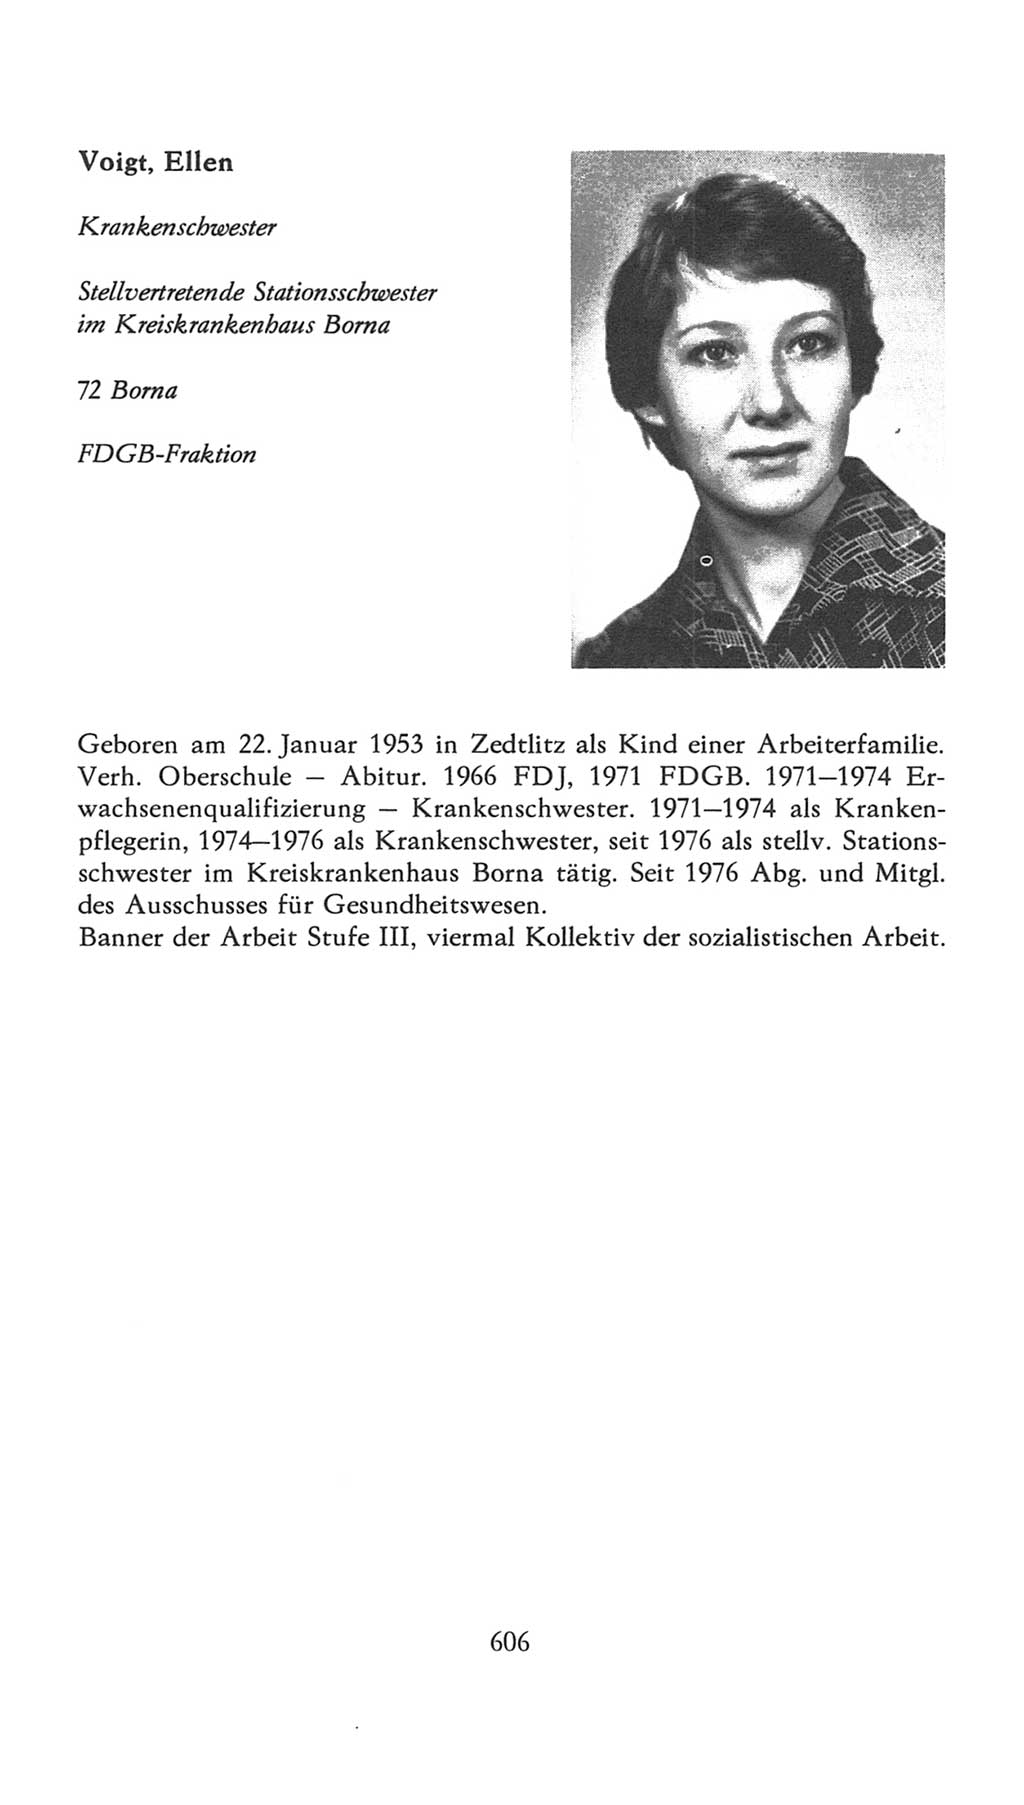 Volkskammer (VK) der Deutschen Demokratischen Republik (DDR), 7. Wahlperiode 1976-1981, Seite 606 (VK. DDR 7. WP. 1976-1981, S. 606)